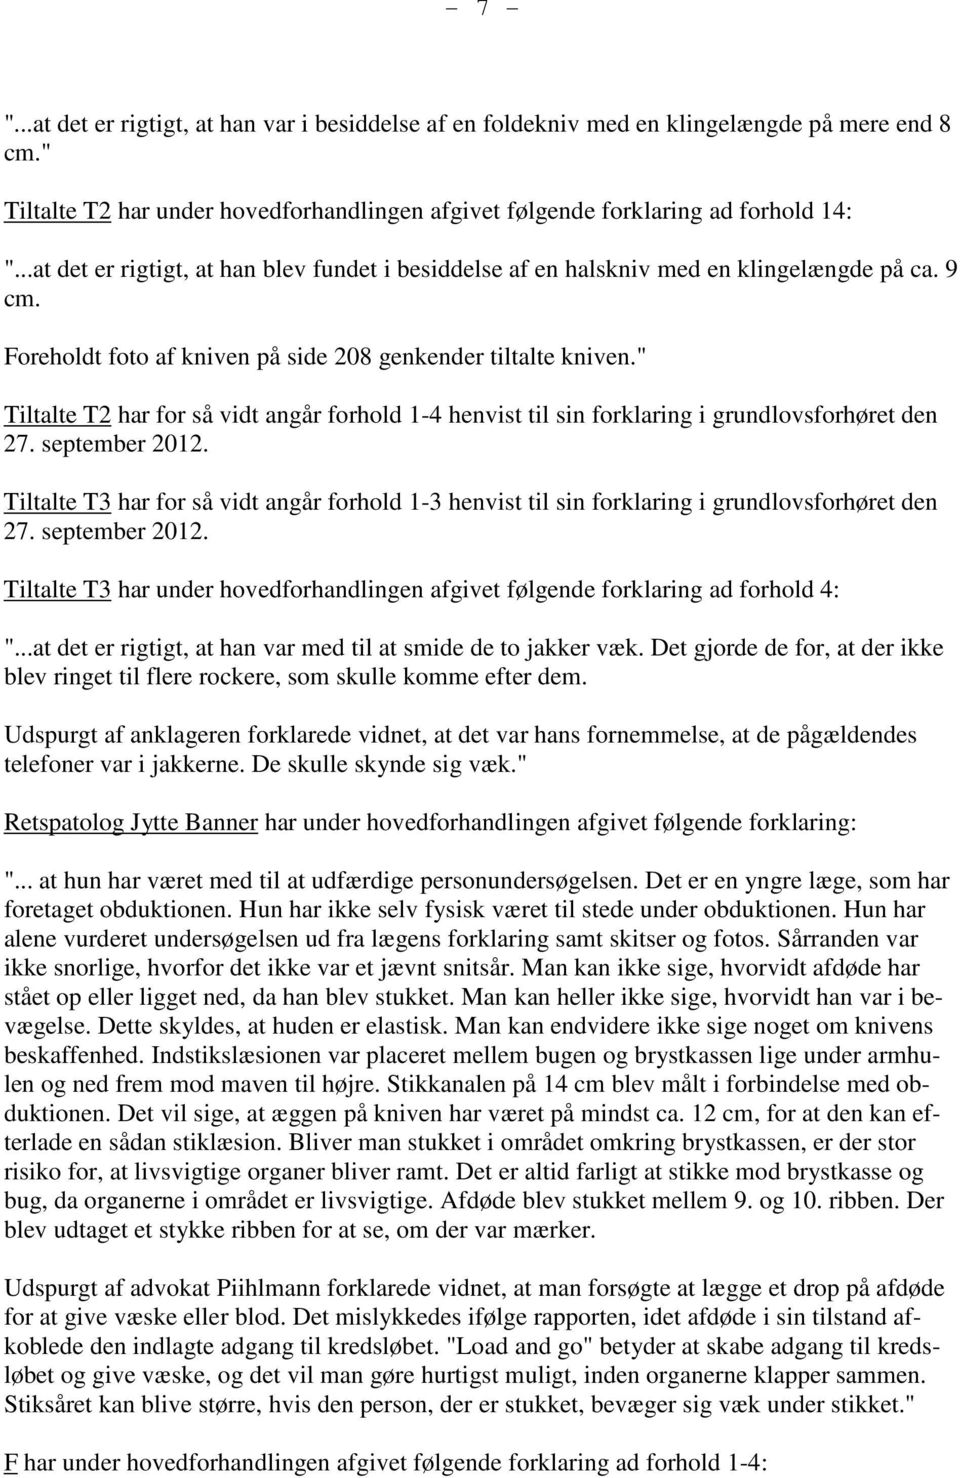 " Tiltalte T2 har for så vidt angår forhold 1-4 henvist til sin forklaring i grundlovsforhøret den 27. september 2012.